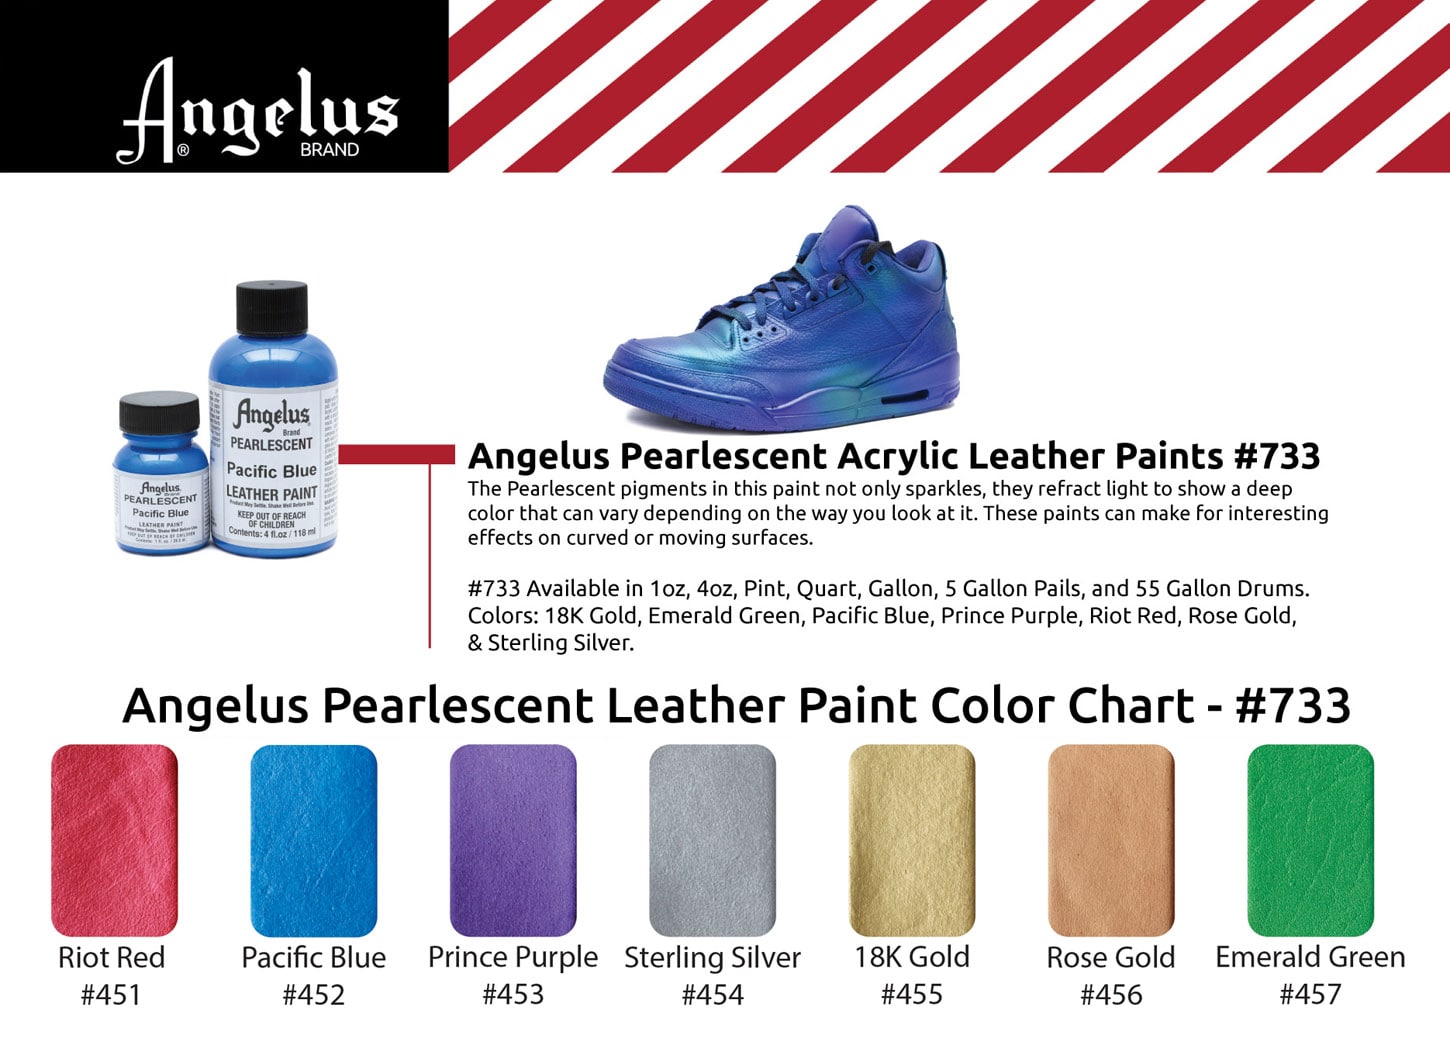 Perłowe farby akrylowe do personalizacji sneakersów, jeansu i akcesoriów Angelus Pearlscent Acrylic Leather Paint.